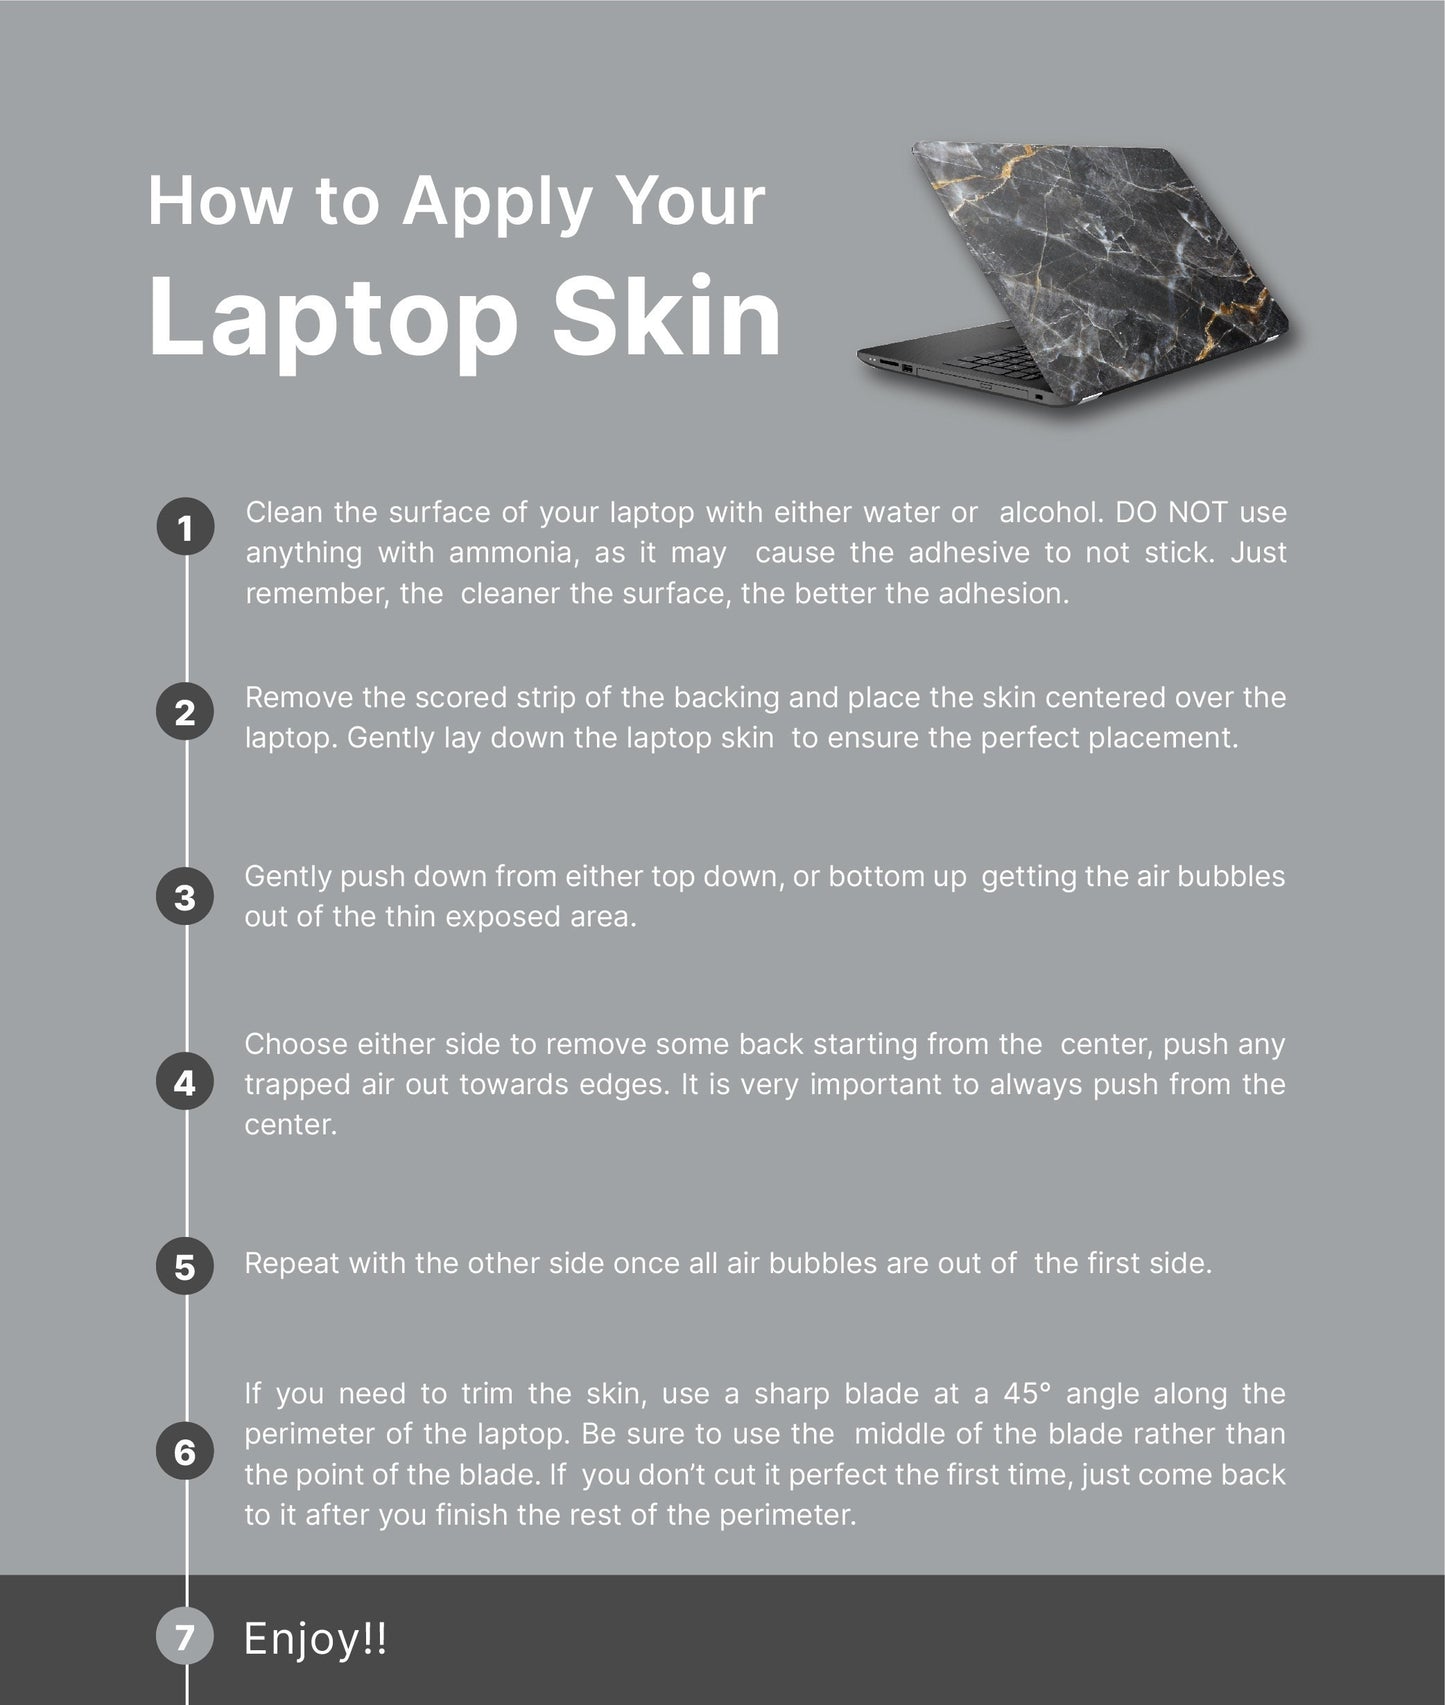 Retro Floral Navy Laptop Skin, Laptop Cover, Laptop Skins, Removable Laptop Skins, Laptop Decal, Customized Laptop Skin, Laptop Stickers 301